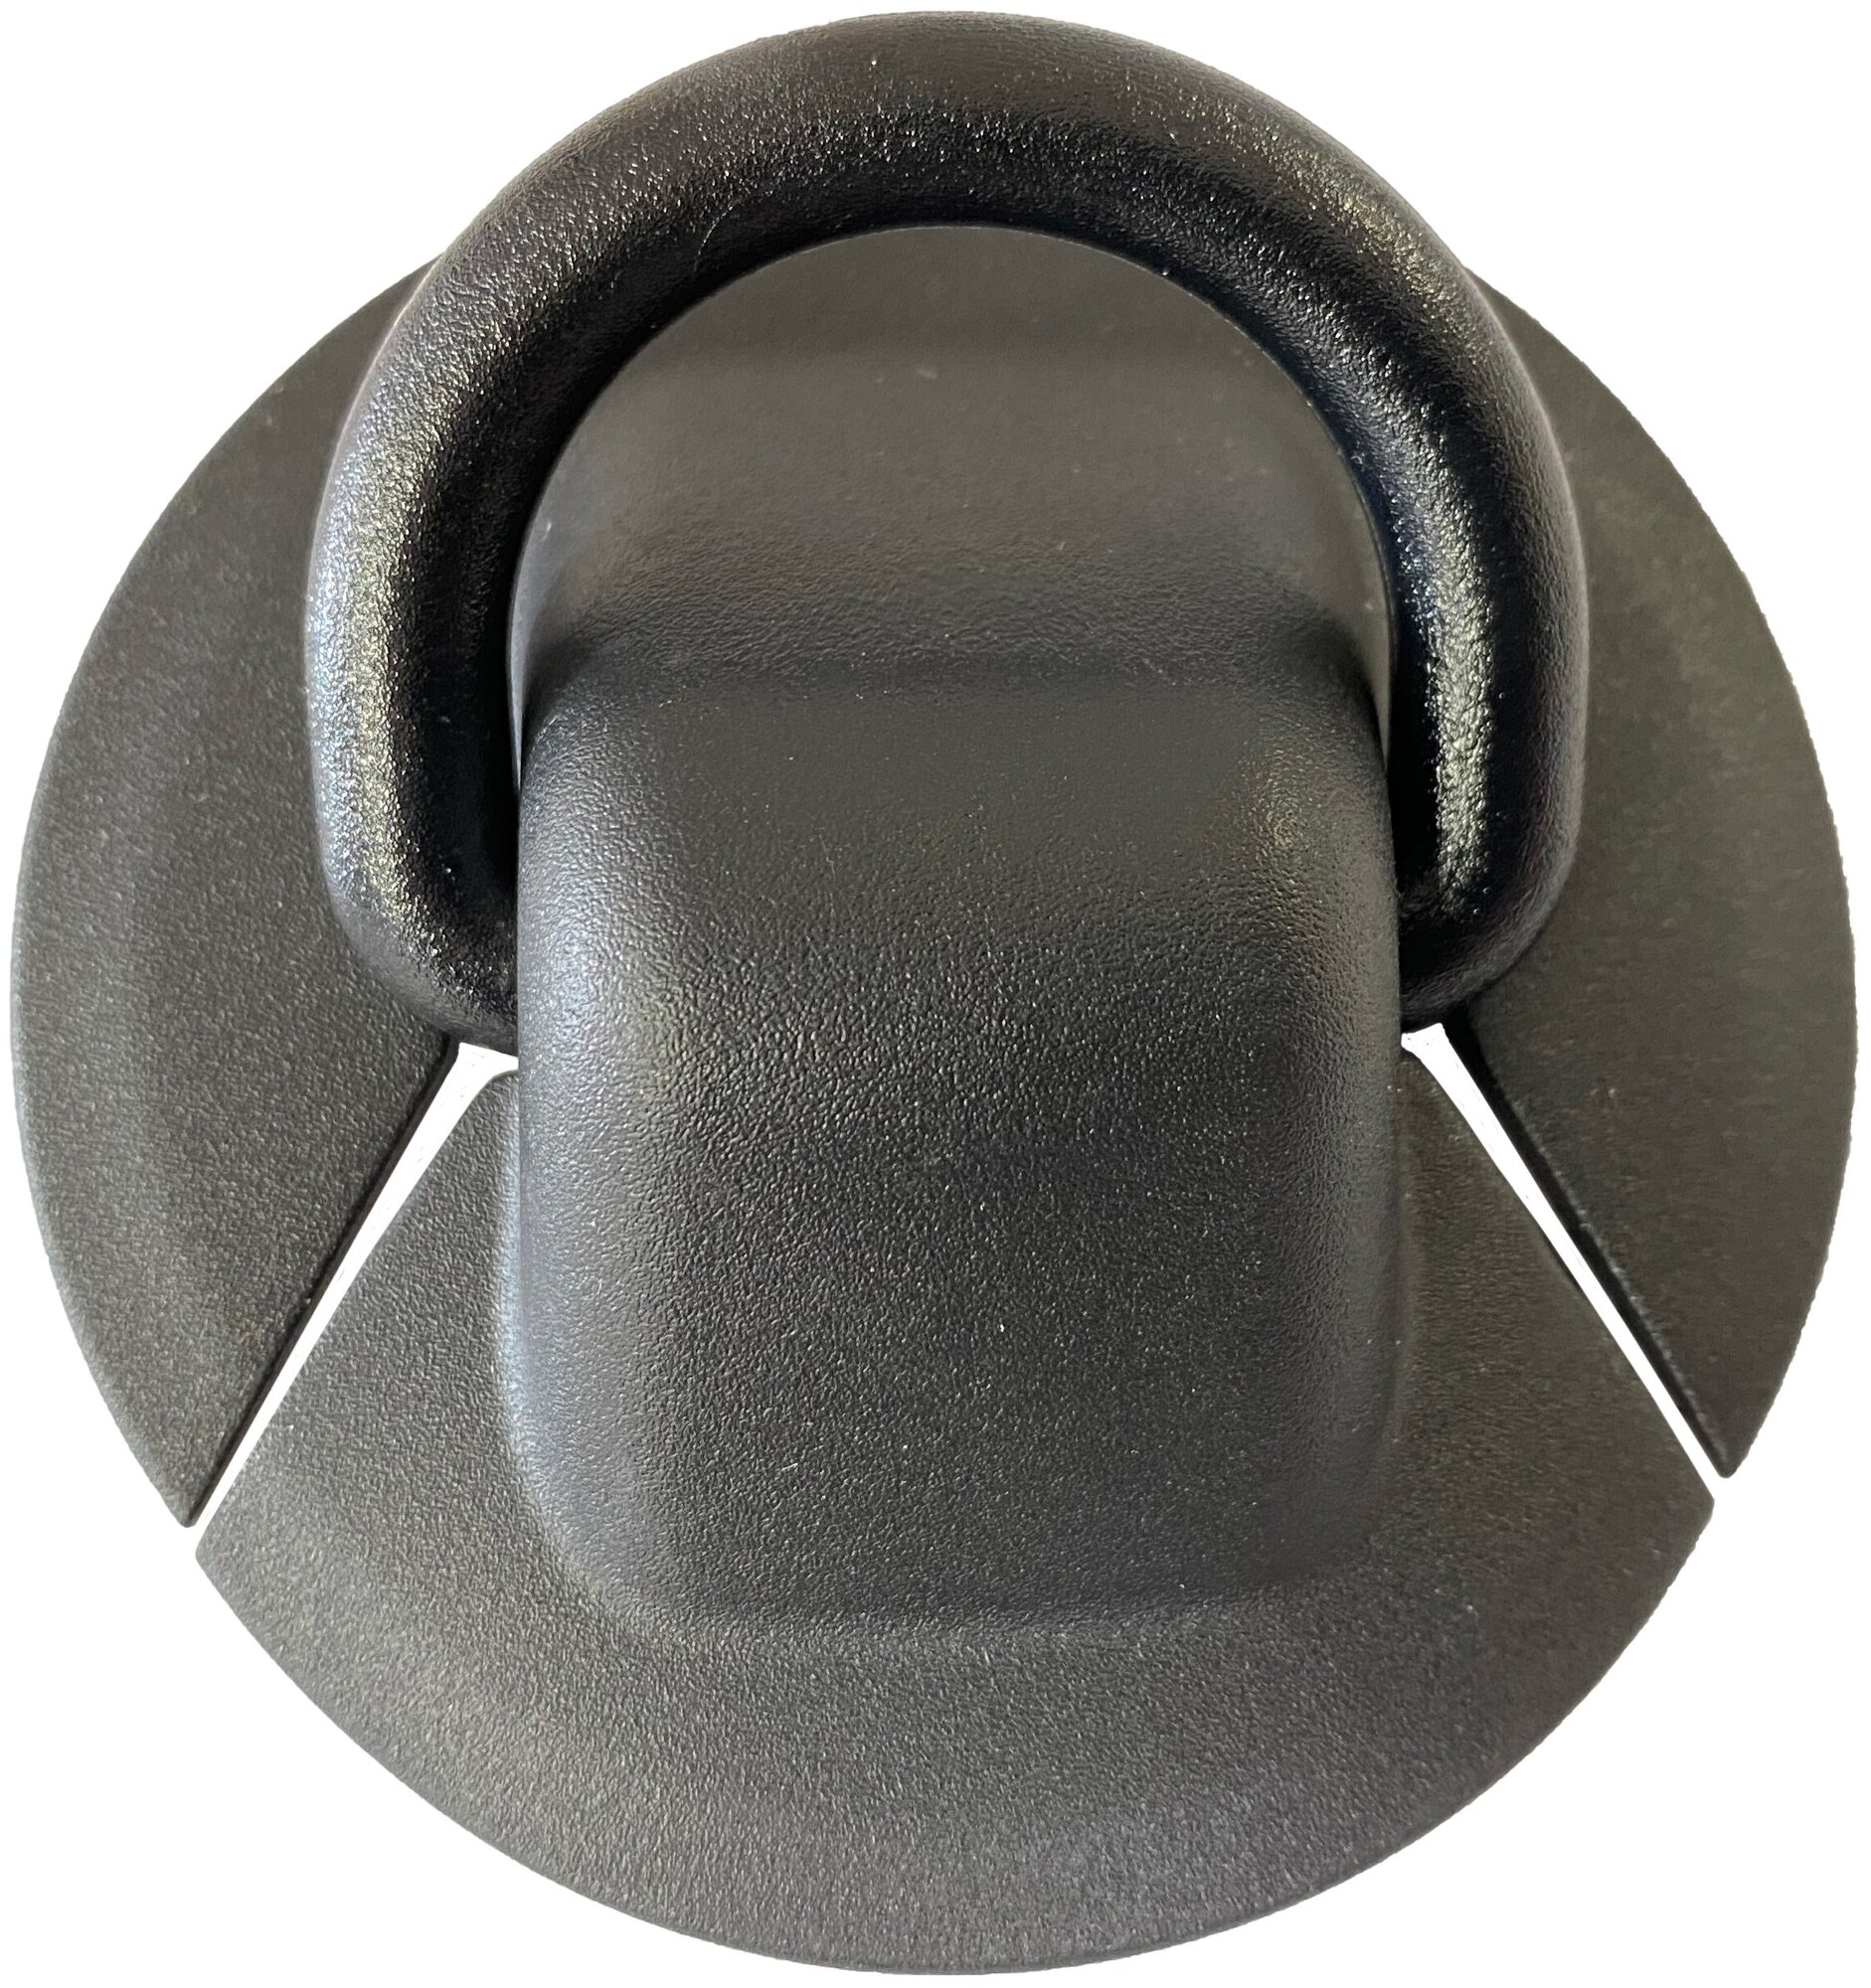 Рым буксировочный с пластиковым кольцом малое для надувной лодки ПВХ (комплект 6 шт)